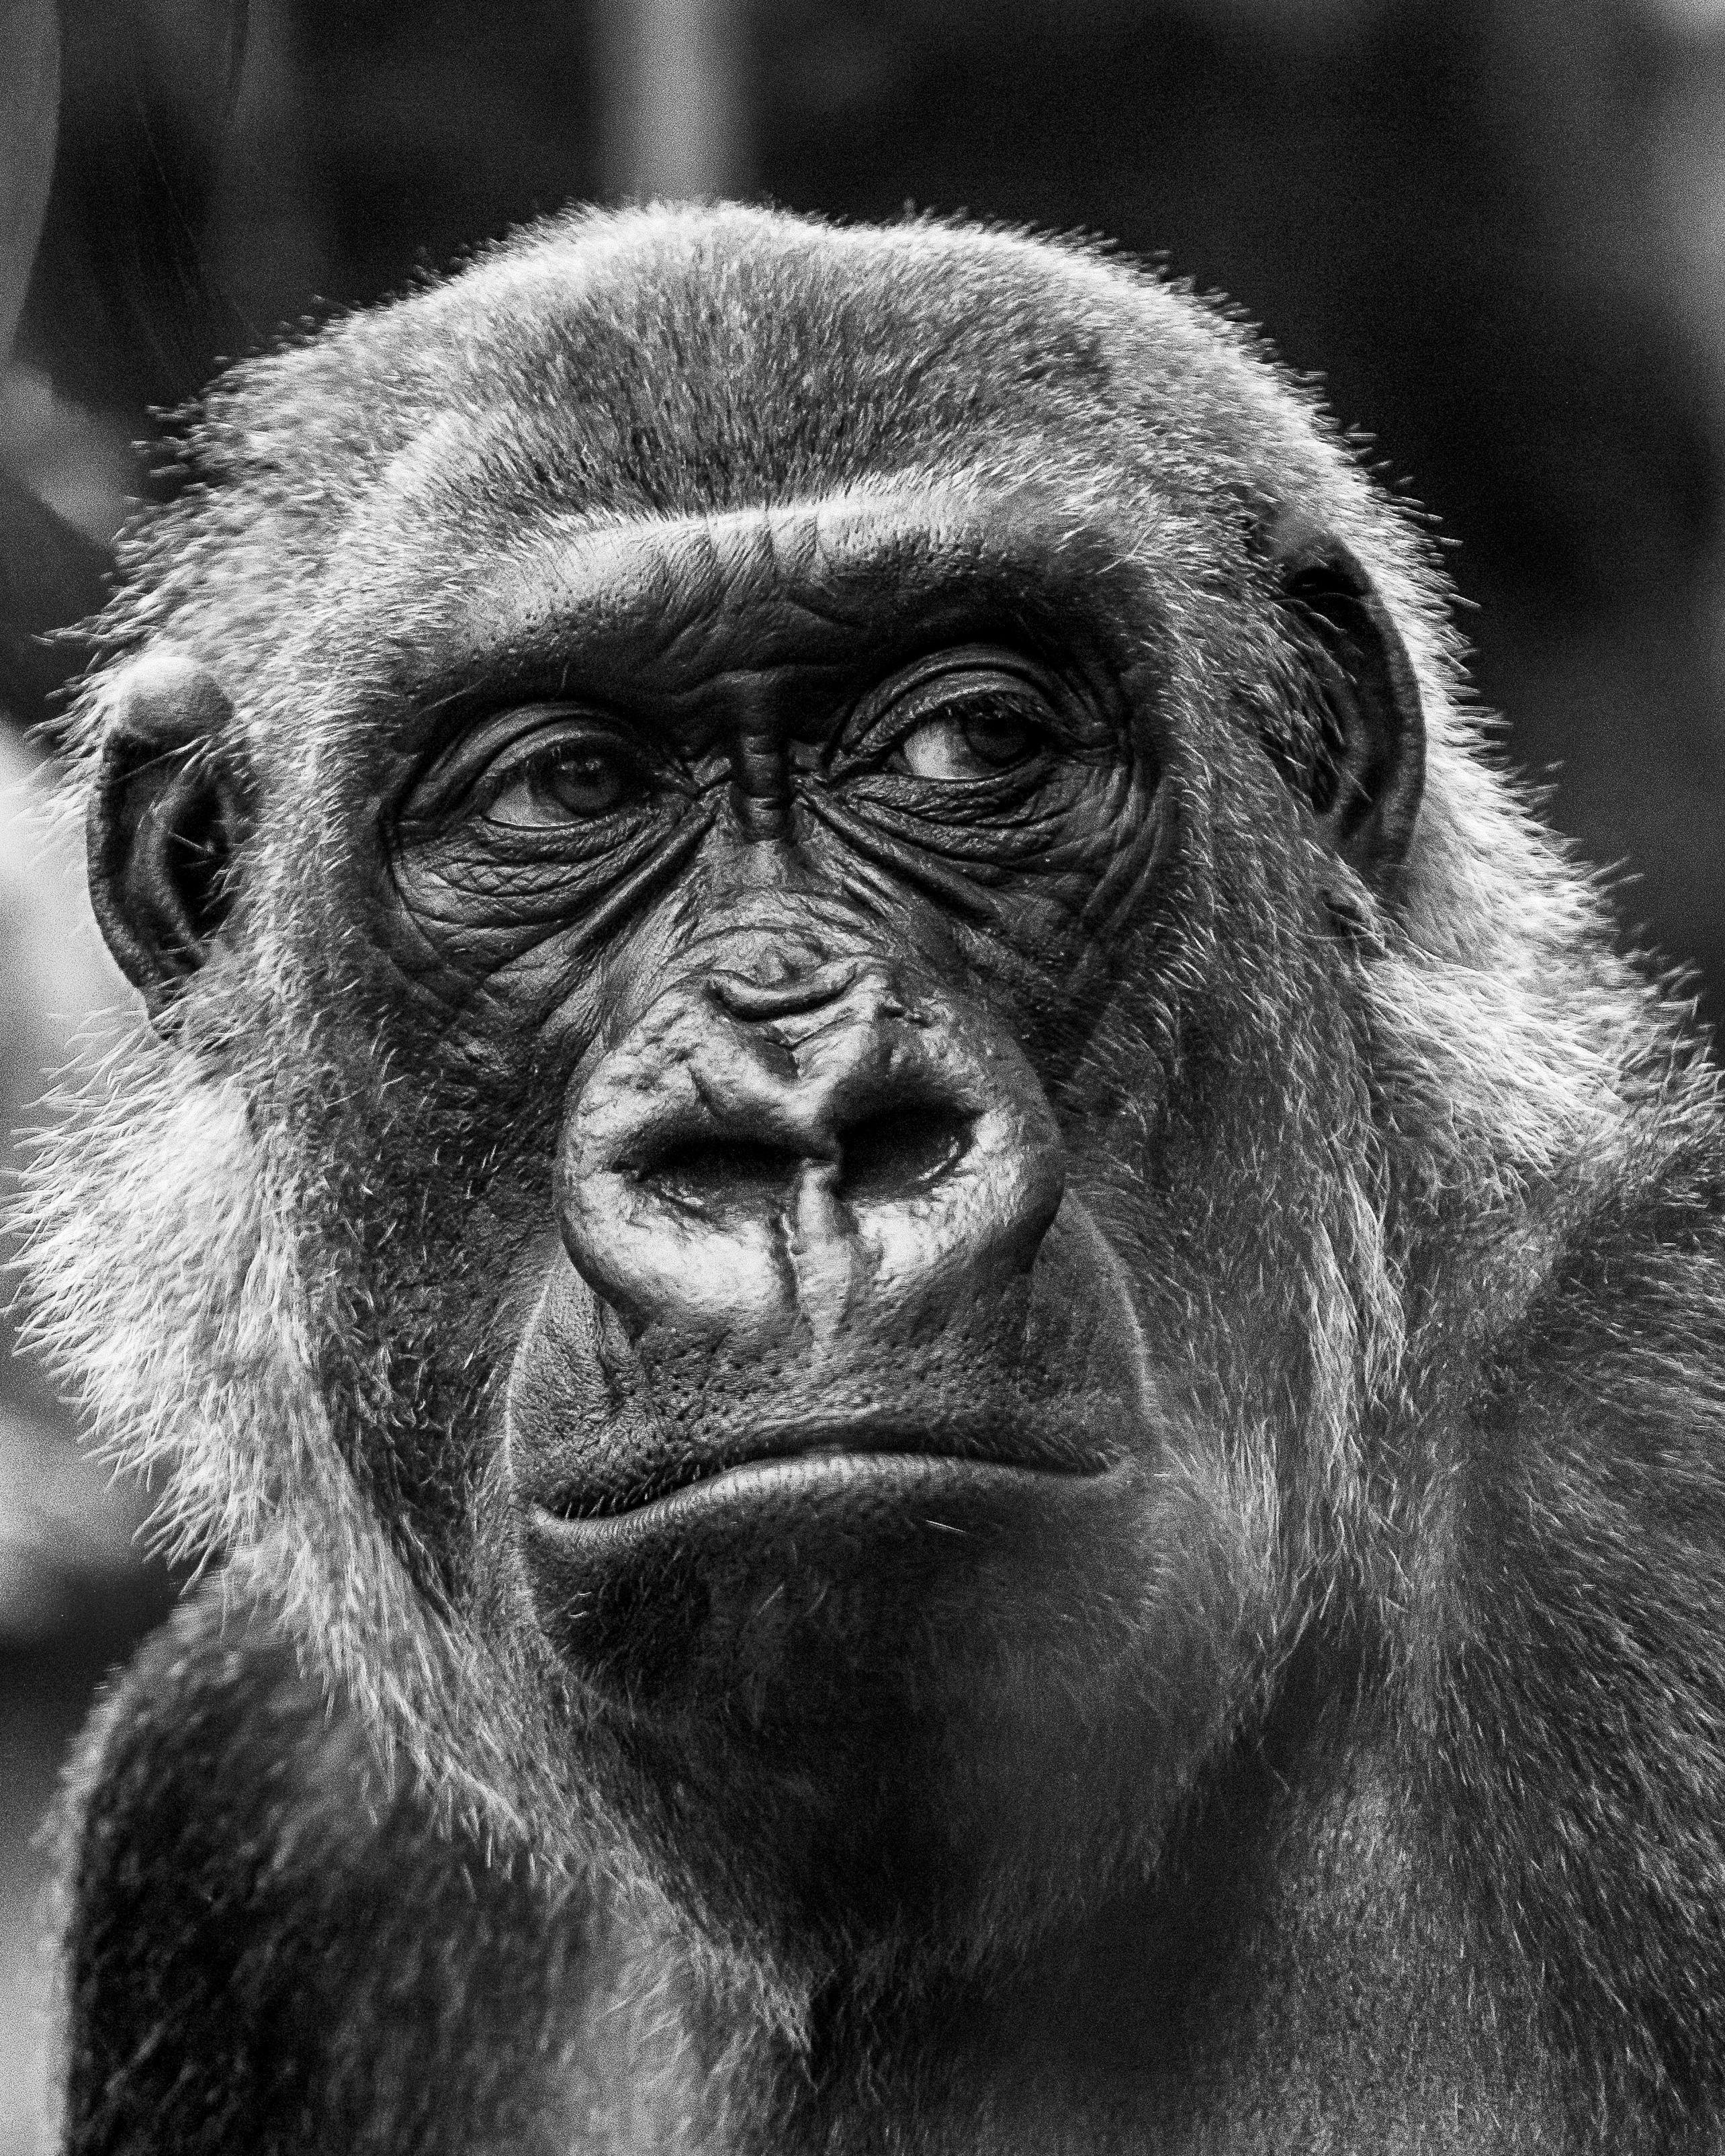 Con Khỉ Đột là một loài động vật thông minh, phát triển tư duy và có sự linh hoạt trong hành động. Hãy xem hình ảnh của chúng để cảm nhận sự khéo léo và thông minh của những con Khỉ Đột.